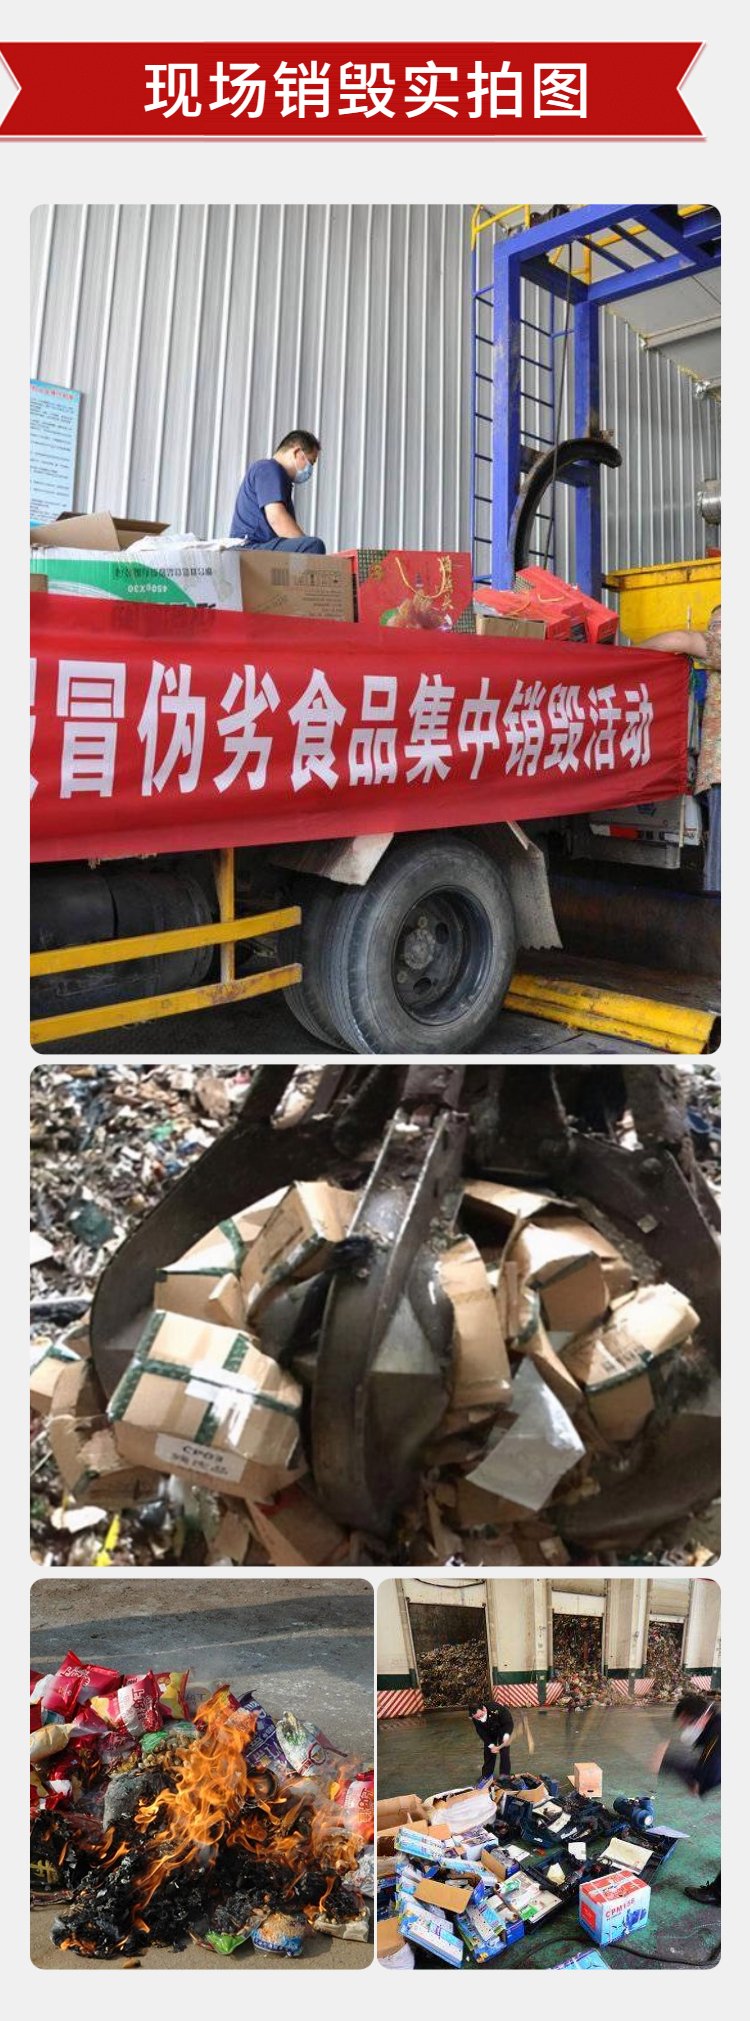 越秀区承接电路板销毁 广州文件销毁公司